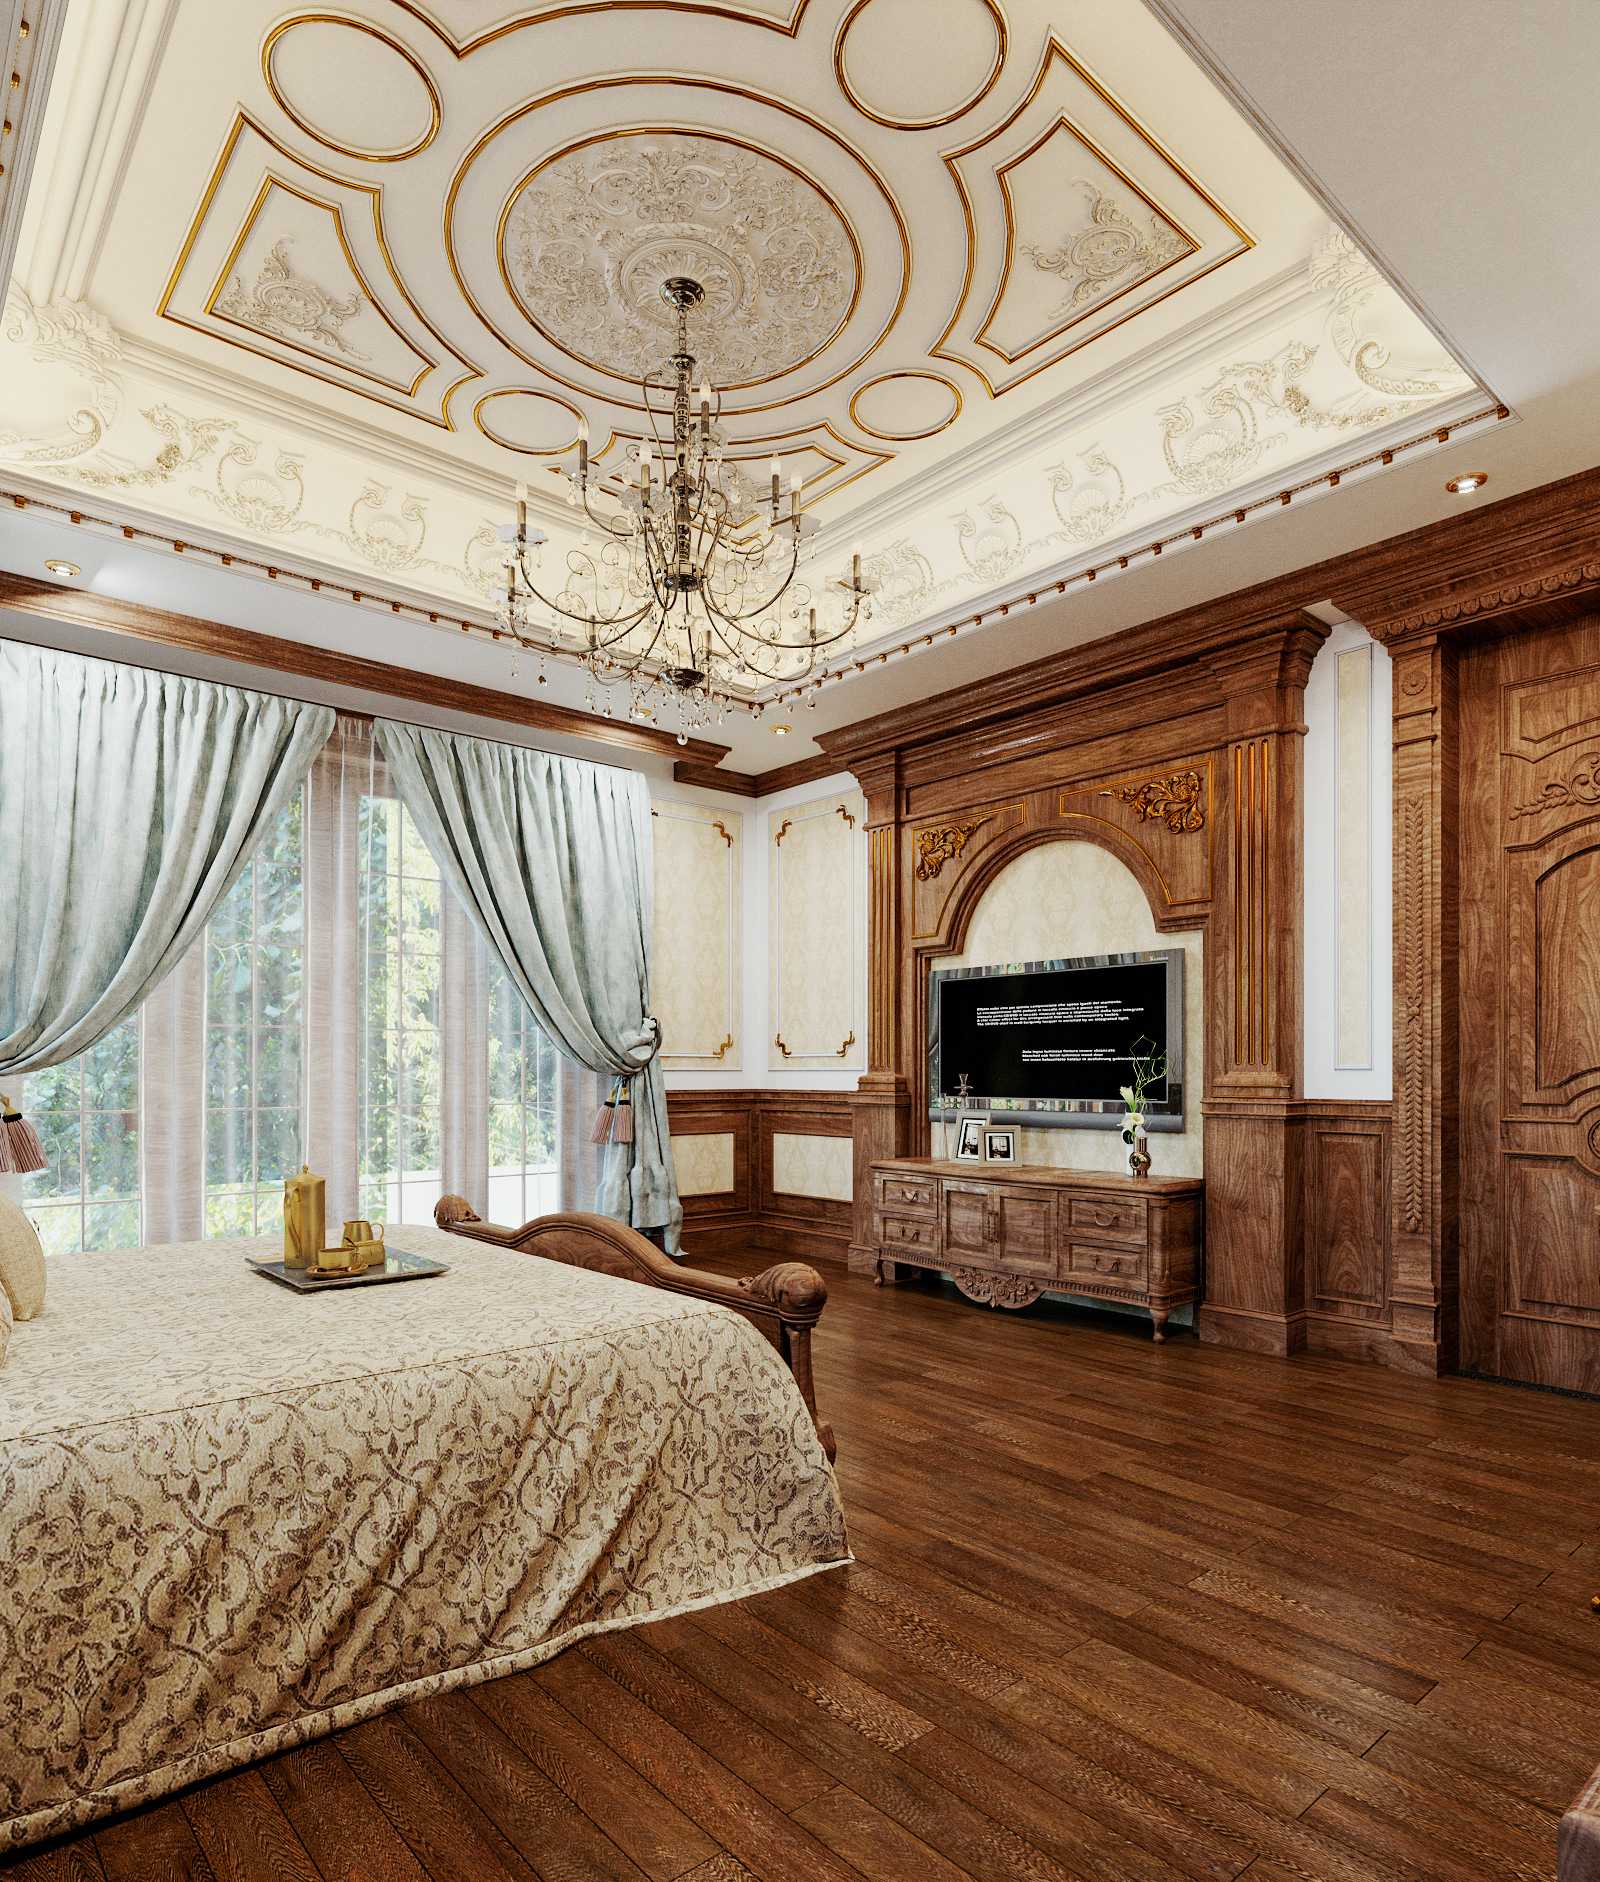 Trần phòng ngủ được thiết kế nổi bật với các họa tiết hoa văn tinh tế